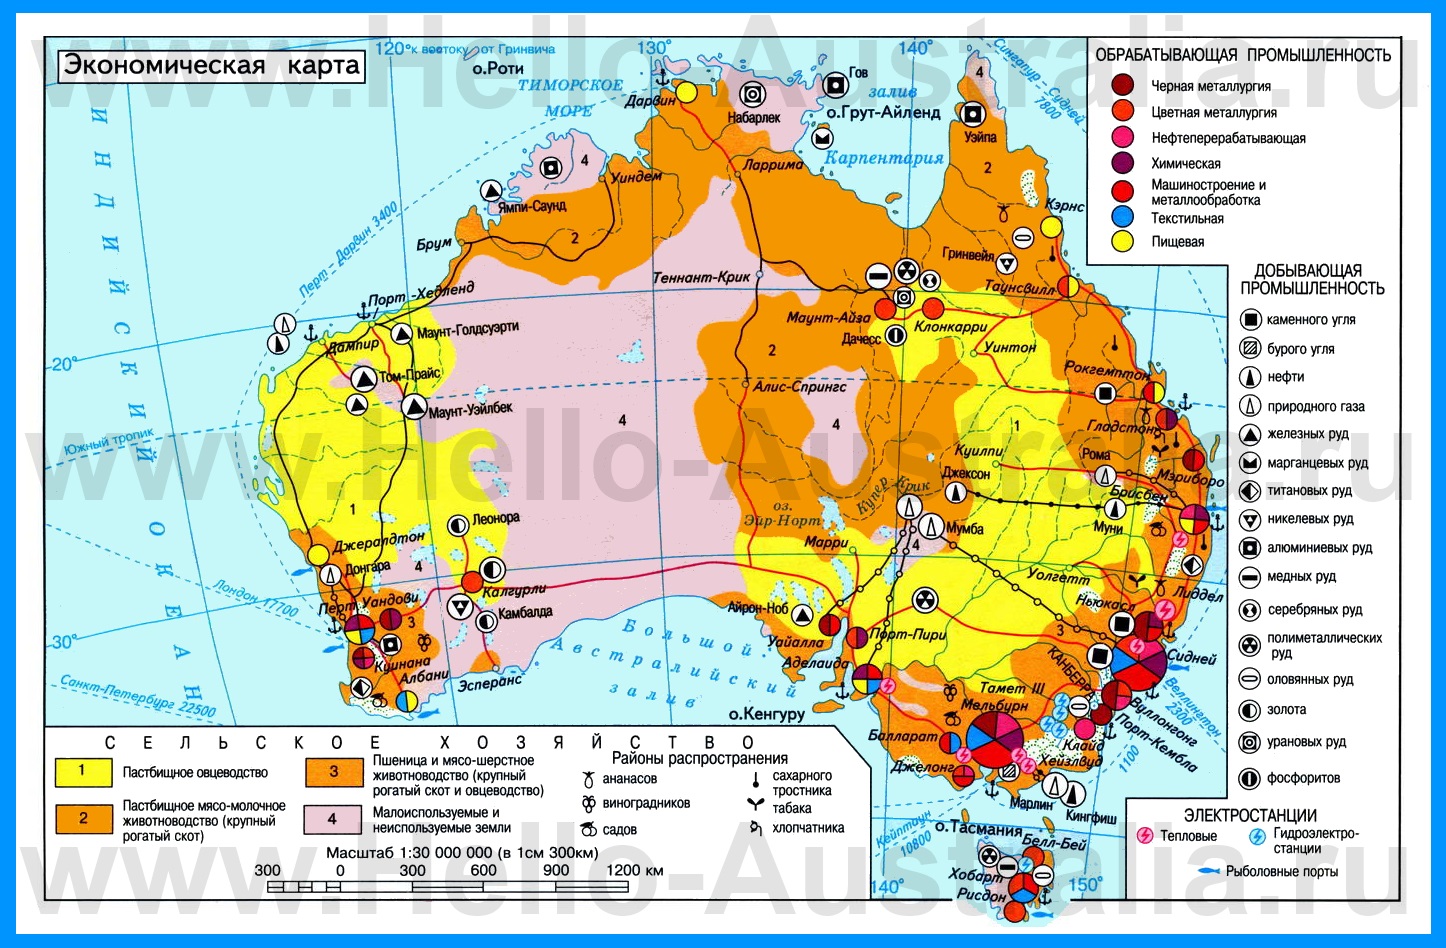 Карты Австралии